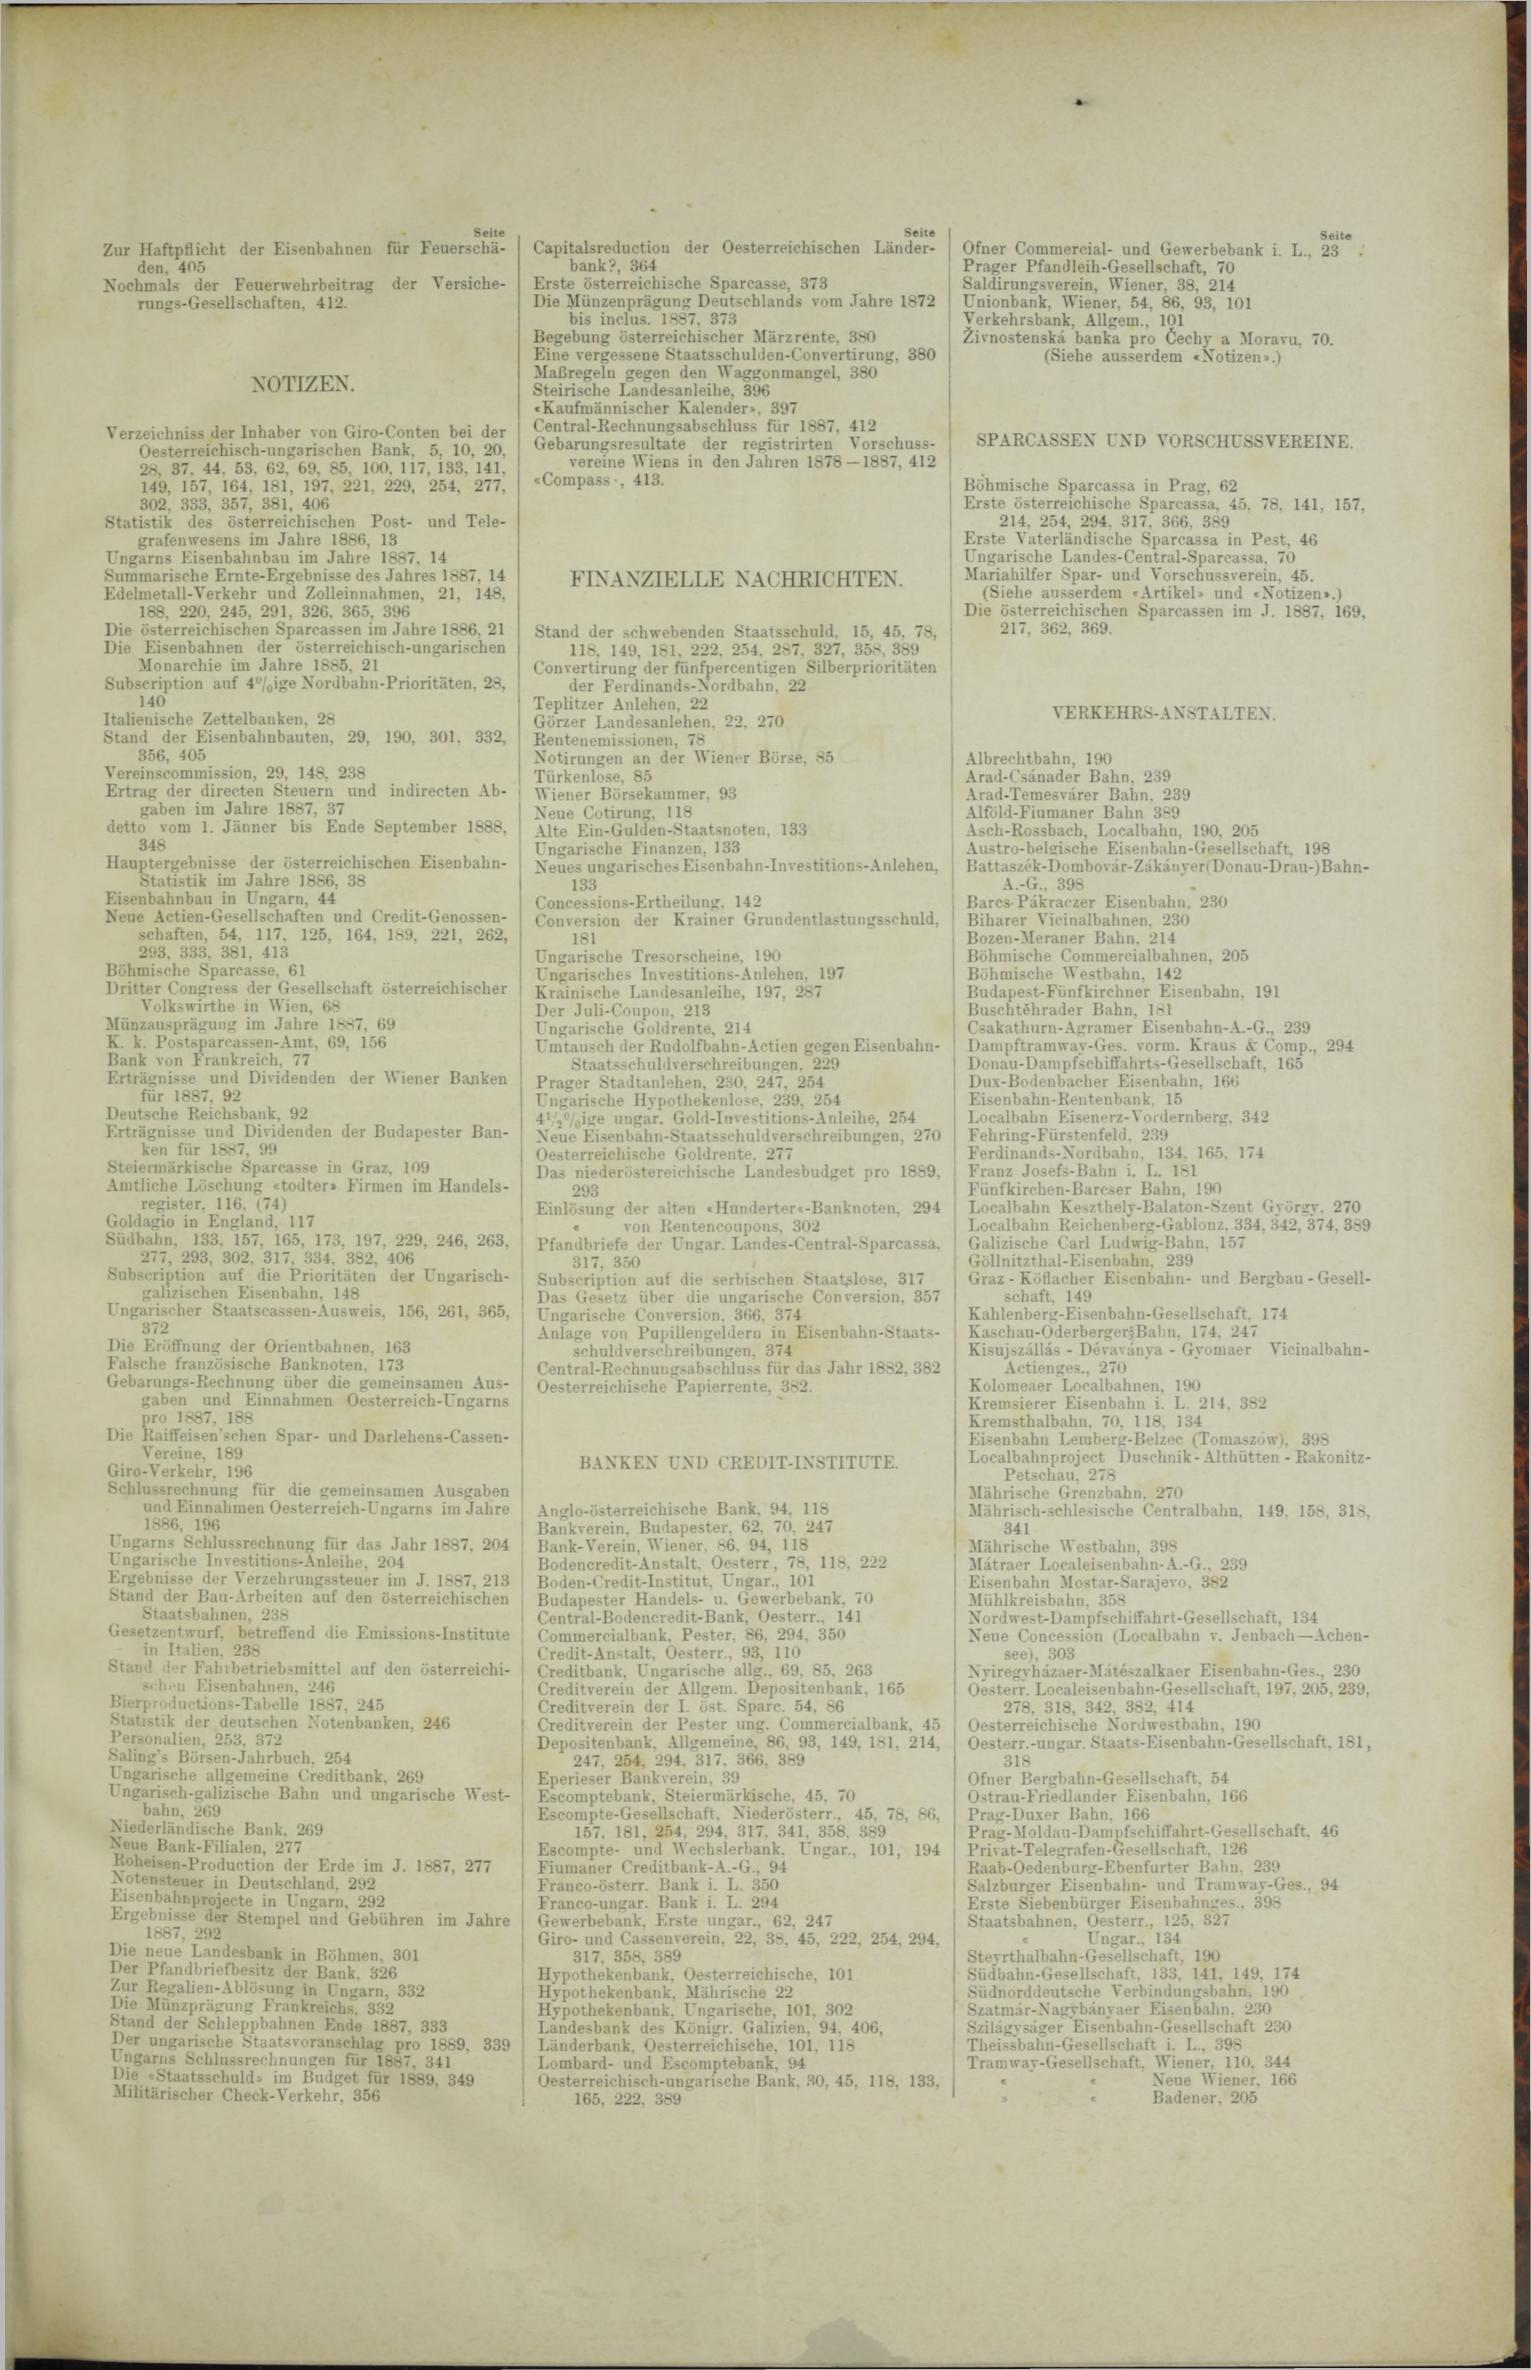 Der Tresor 08.11.1888 - Seite 11